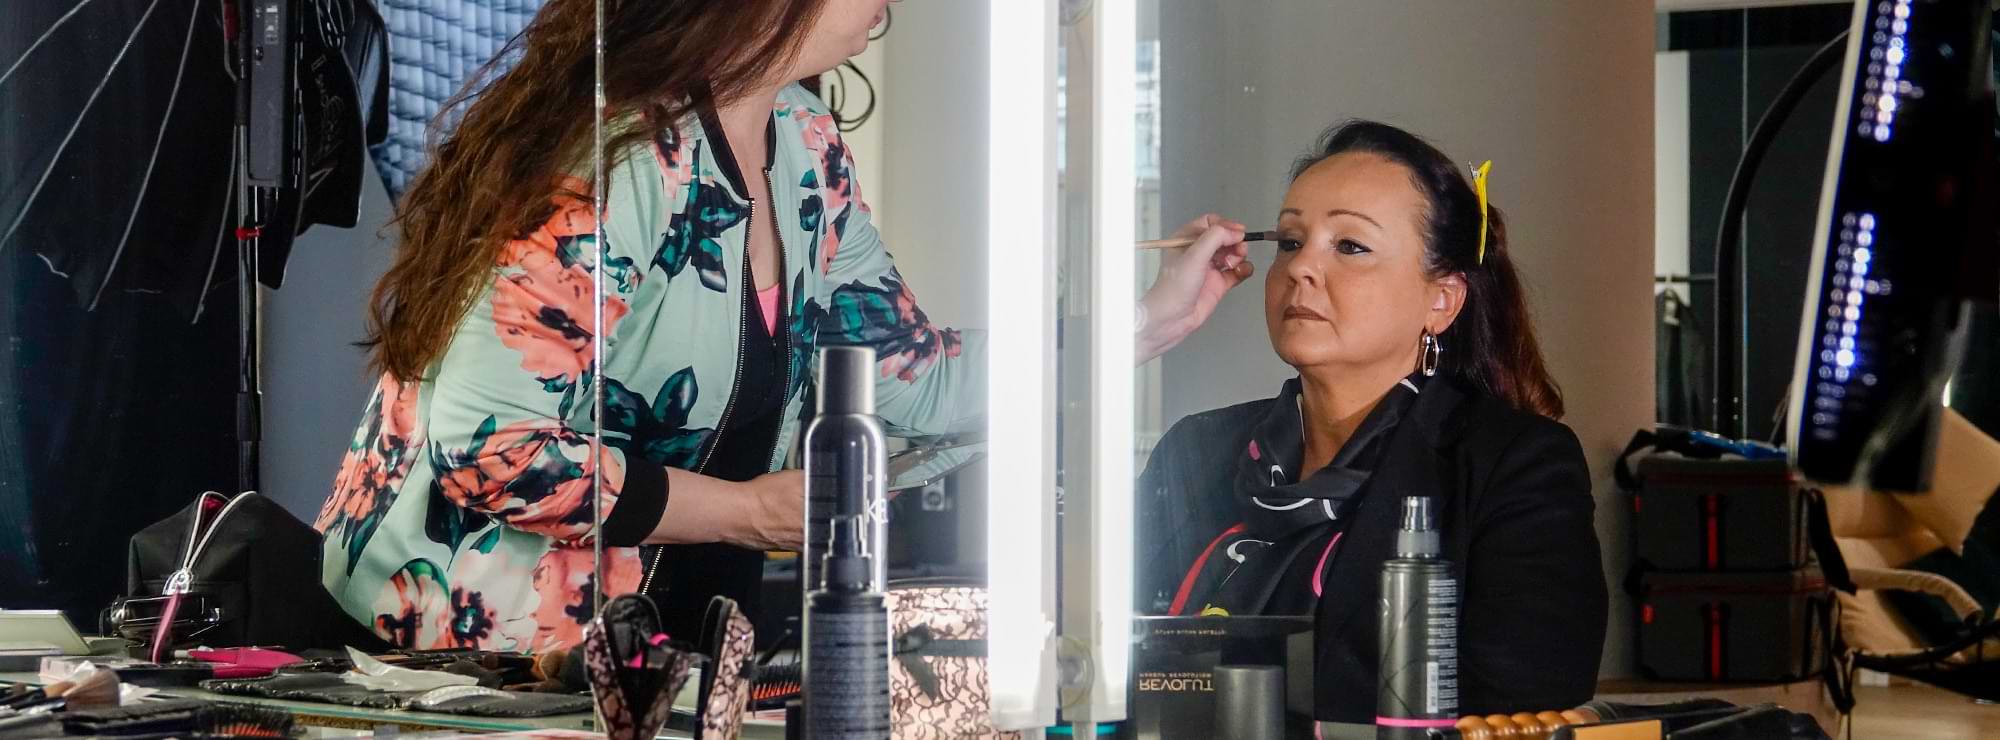 Annette Wenz wird vor einem Spiegel von einer Visagistin geschminkt